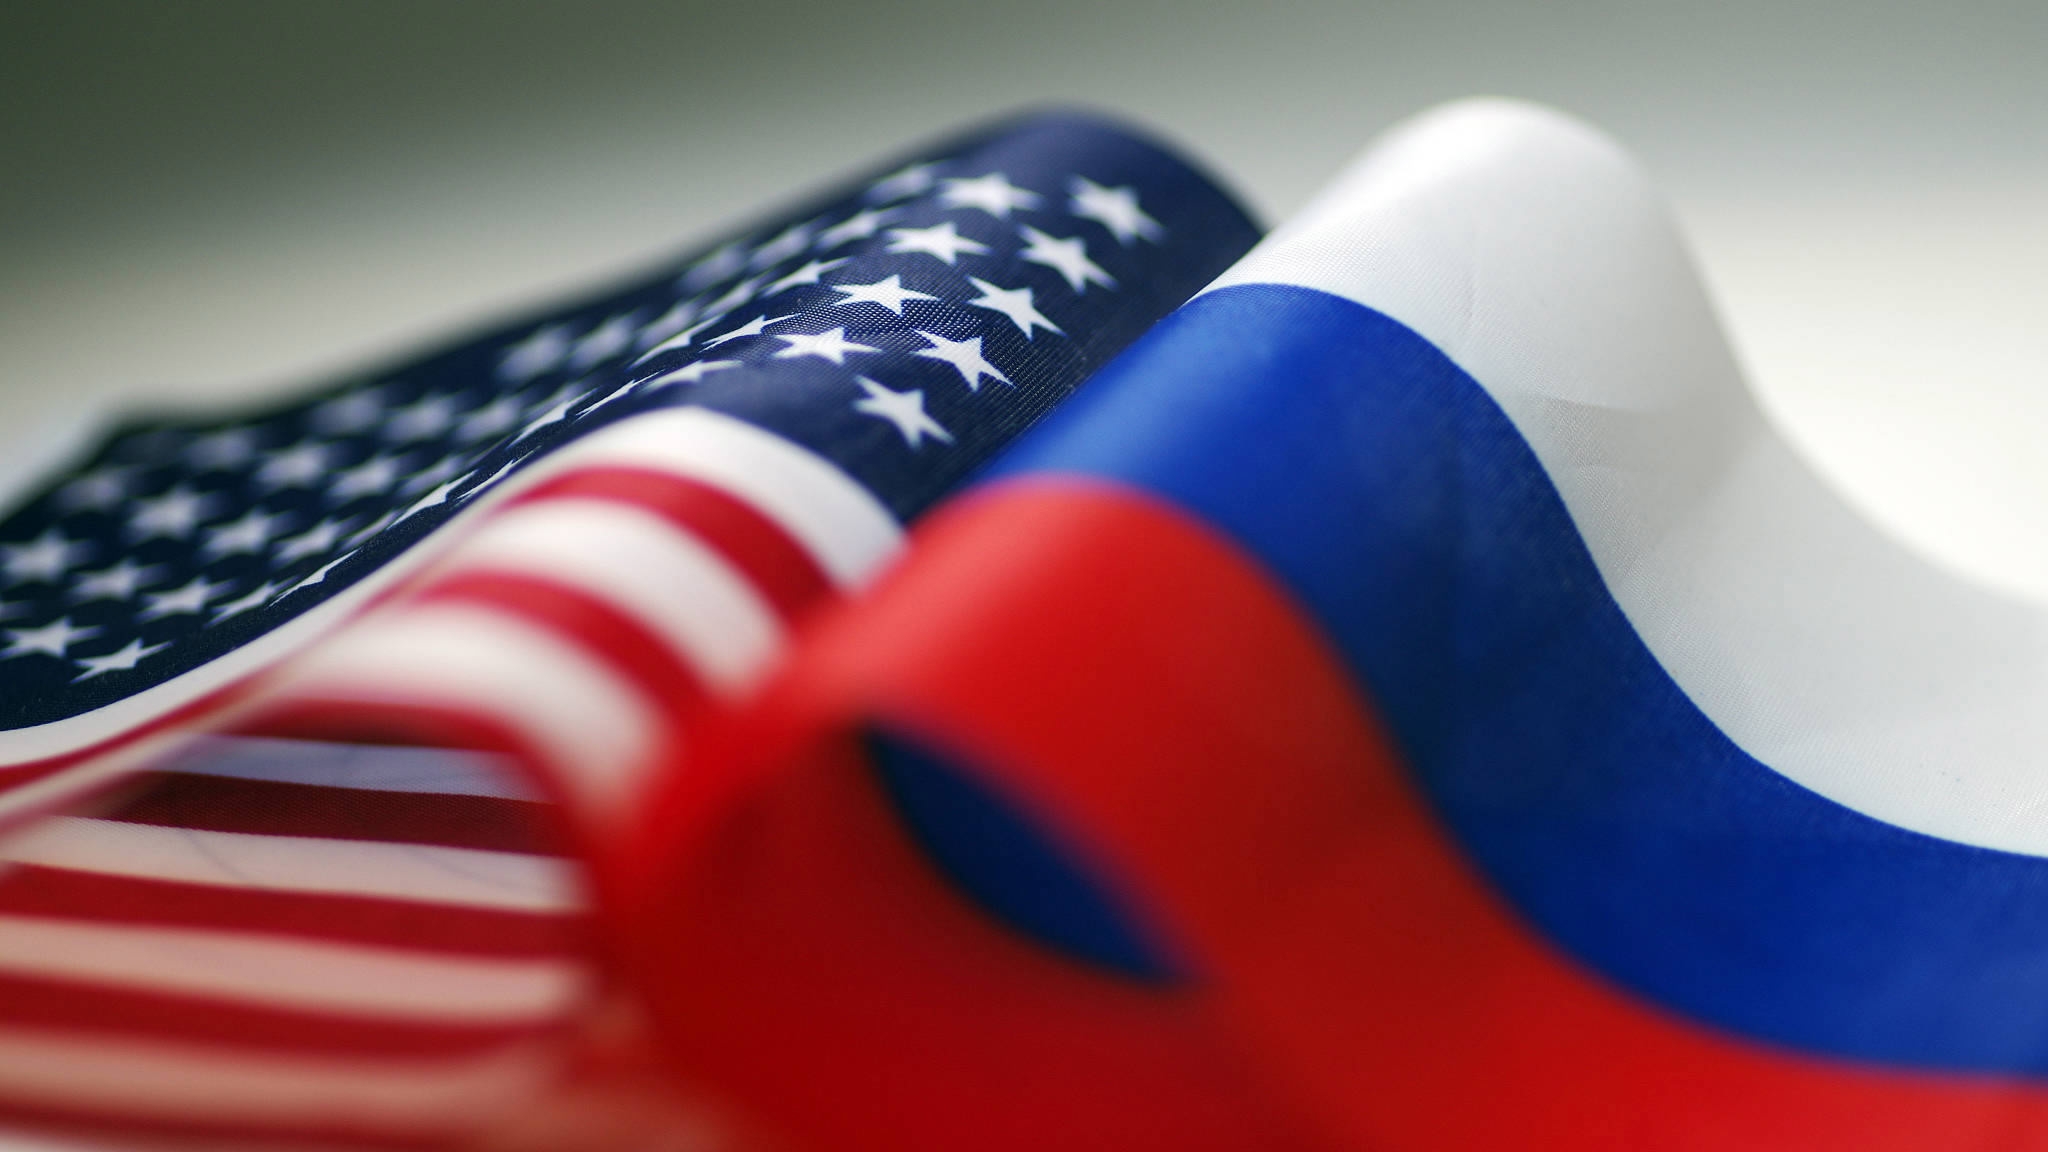 Представители РФ и США обсудили в Женеве вопросы стратегической стабильности между странами